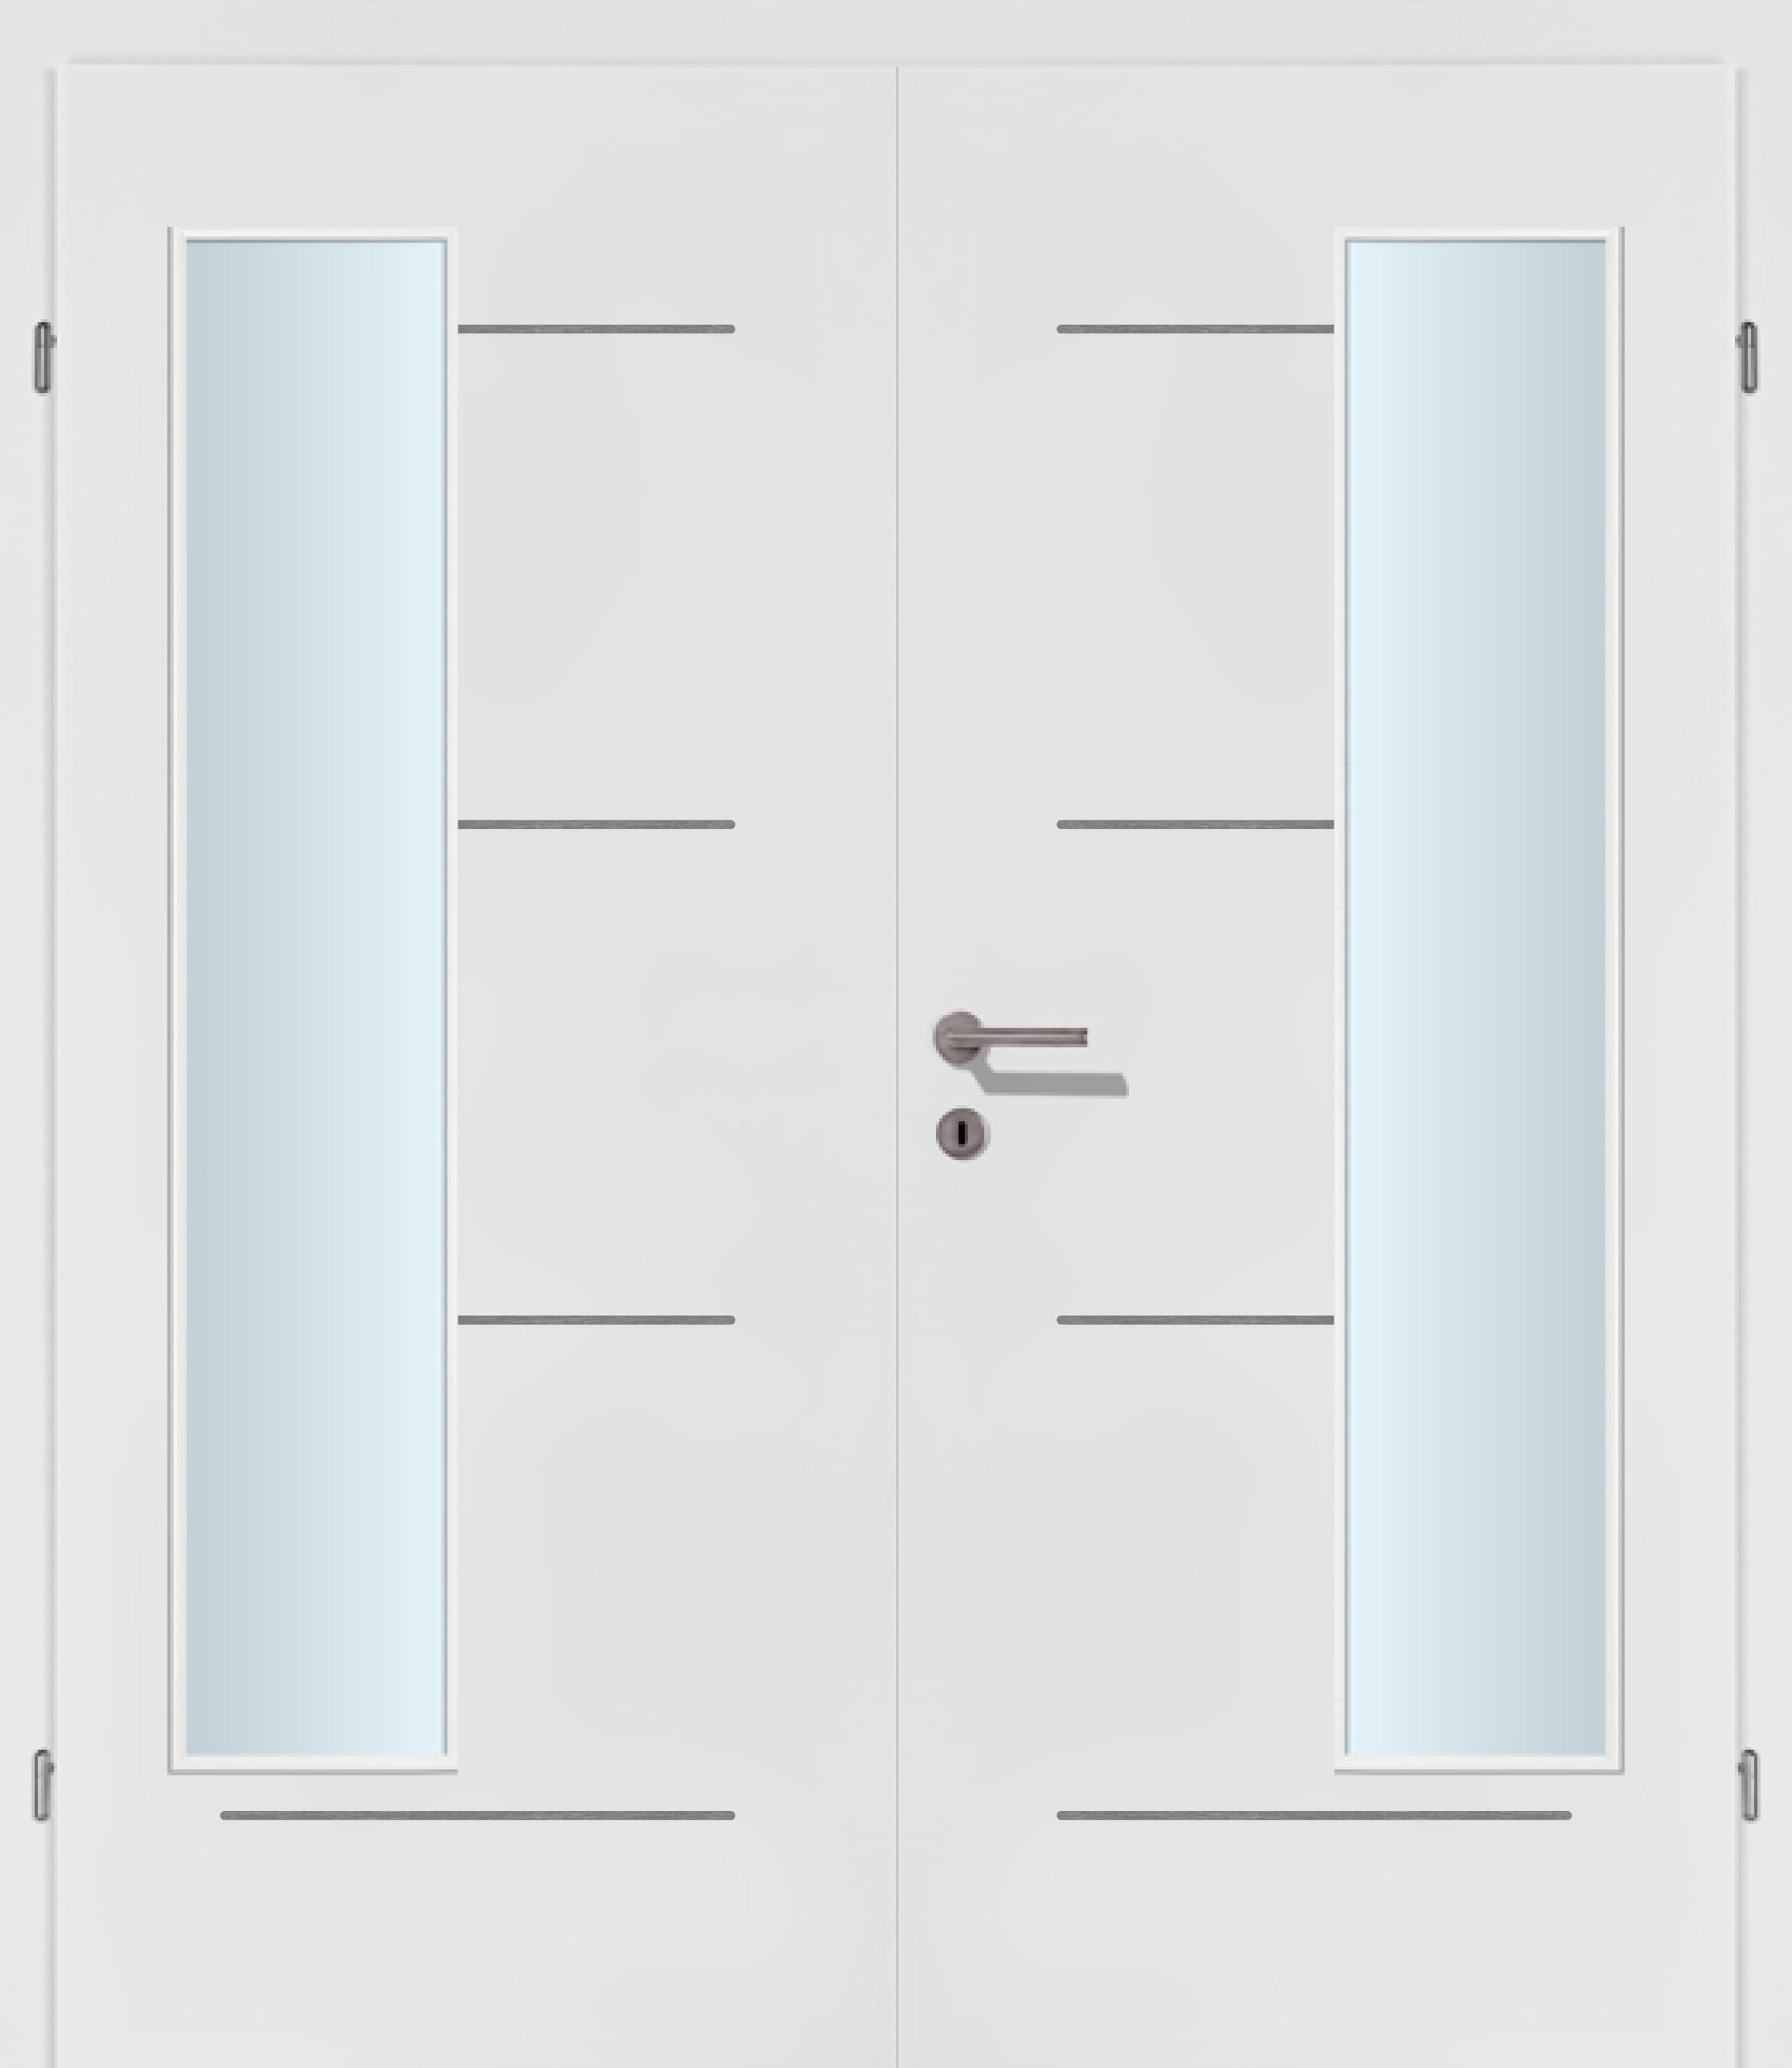 Selektion T49 Alu Effekt Lisenen weiss Innentür Inkl. Zarge (Türrahmen) Doppeltüre Inkl. Glaslichte EN Bandseitig